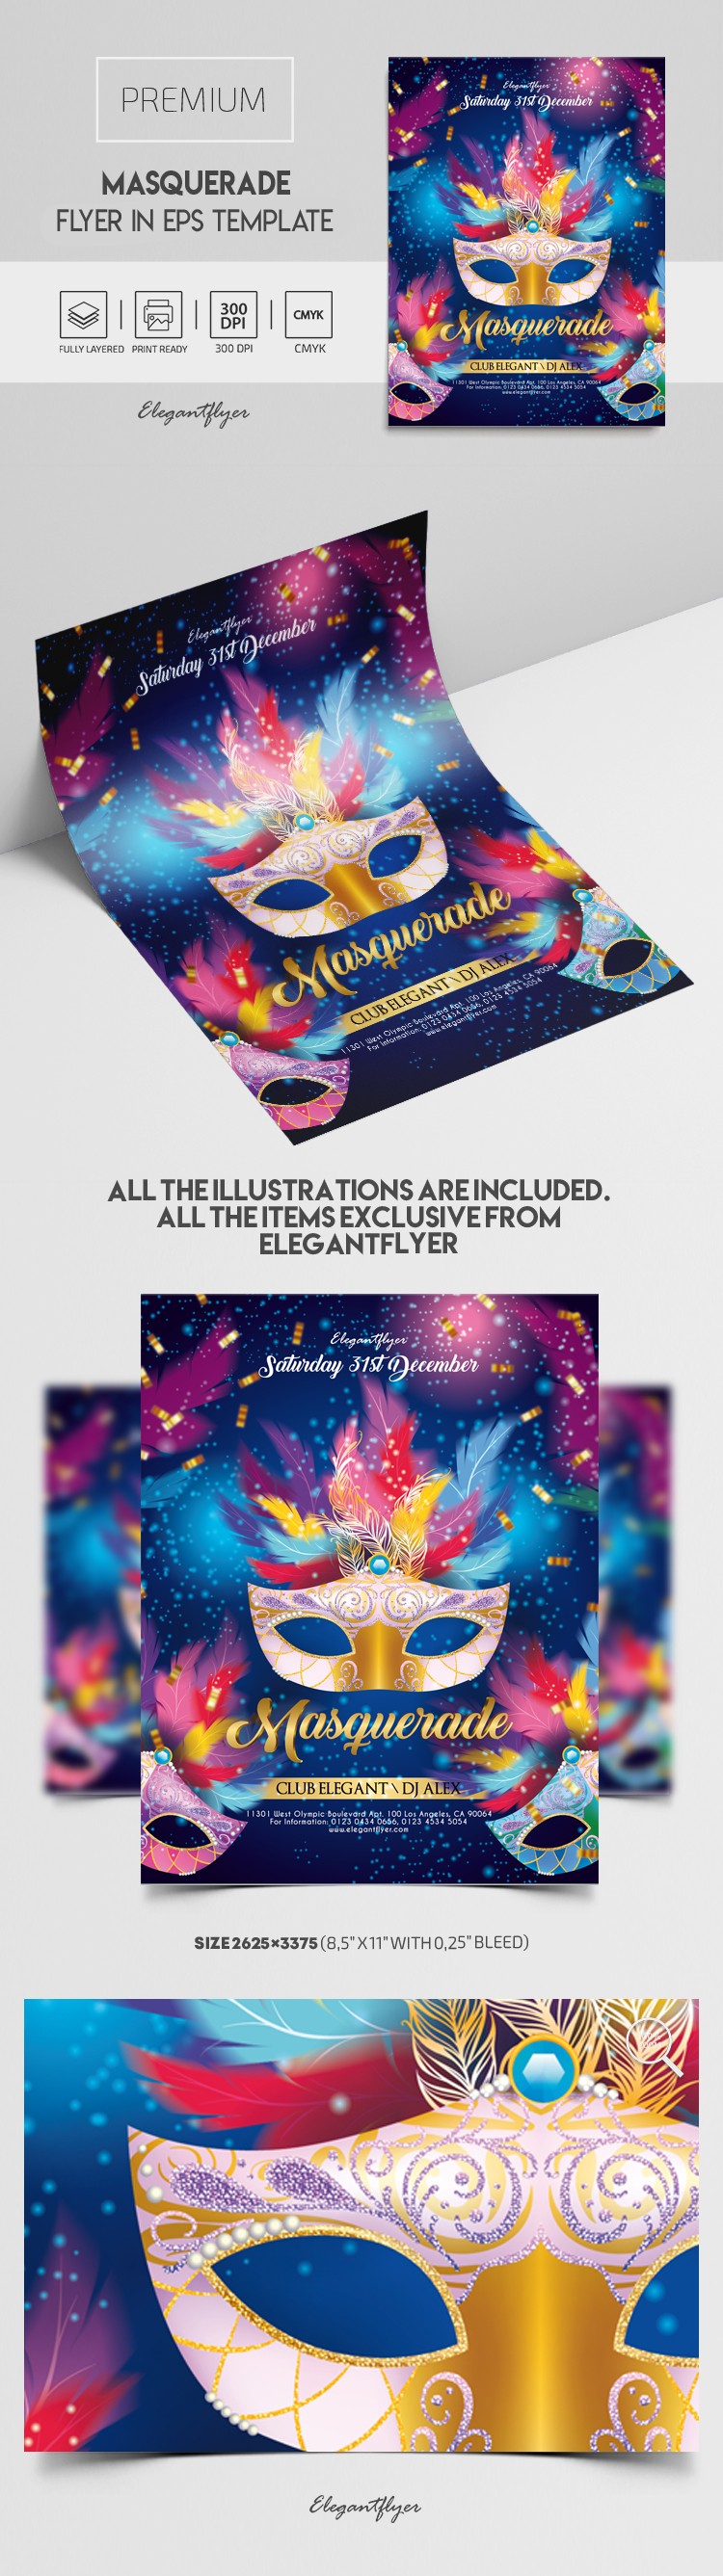 Masquerade Flyer EPS by ElegantFlyer